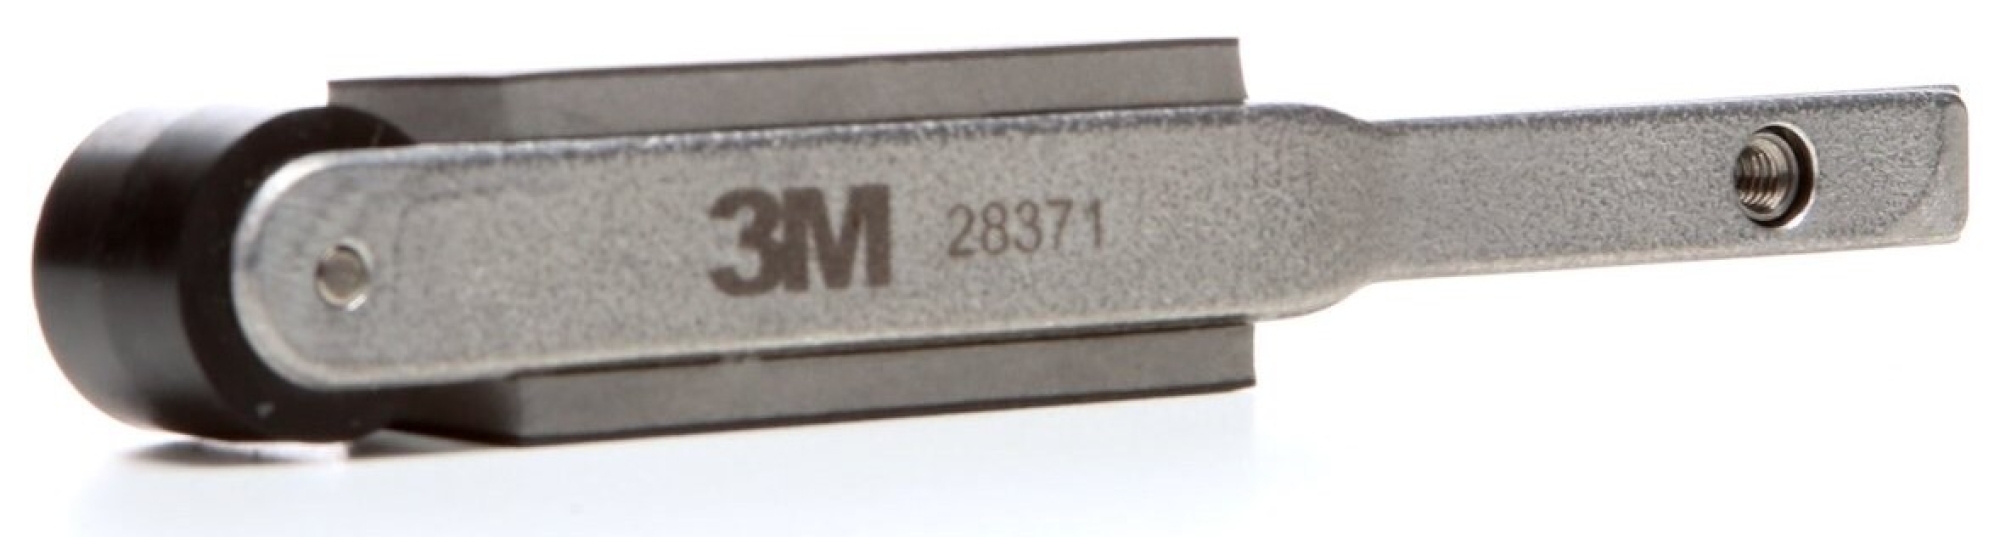 3M™ 28371, 16 - 19 mm x 457 mm, Gerade, Rolle: Ø 18 mm, Kontaktarm für Feilenbandmaschine, Für breitere Bänder